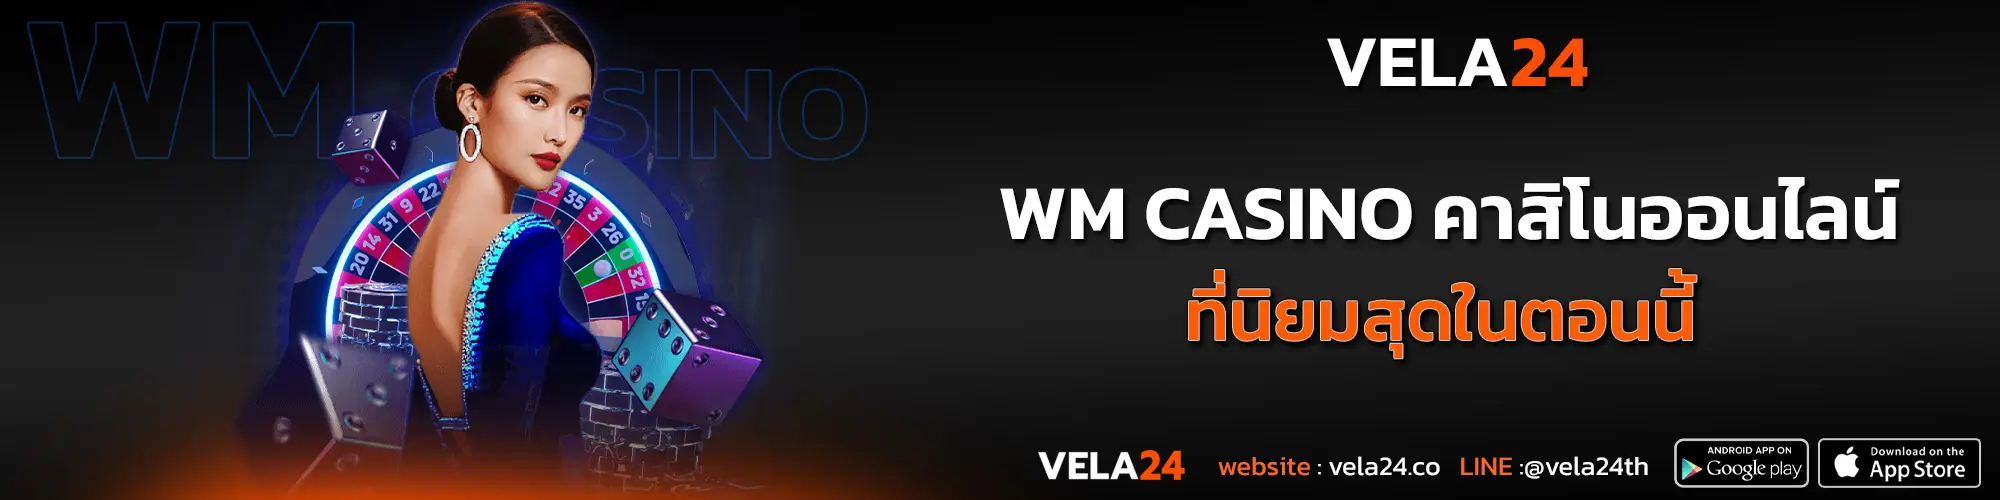 WM Casino คาสิโนออนไลน์ ที่นิยมสุดในตอนนี้